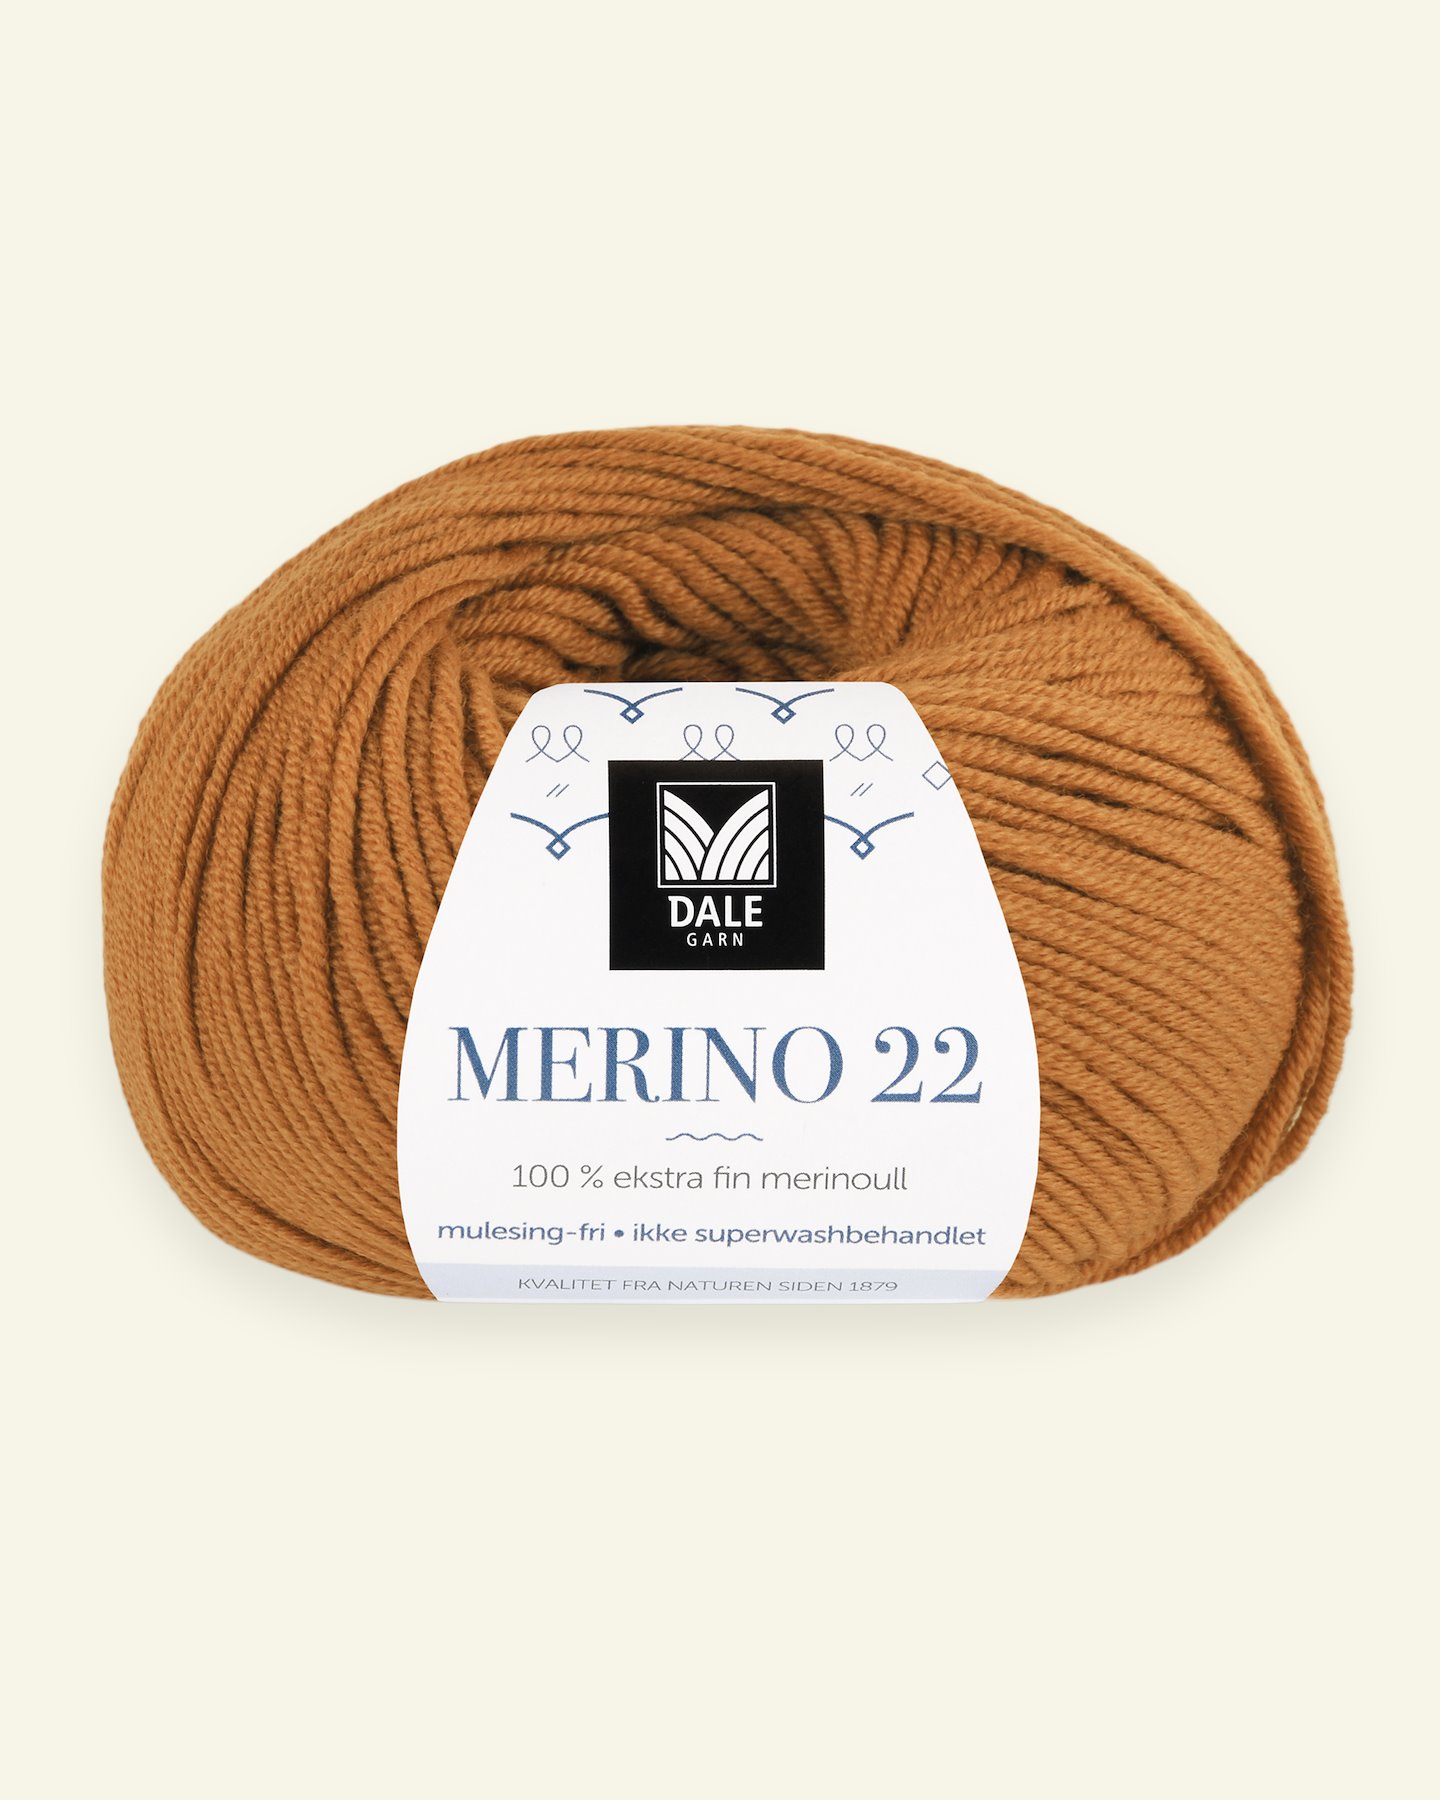 Dale Garn, 100% extra fine merino wool yarn, "Merino 22", bruned orange 90000380_pack